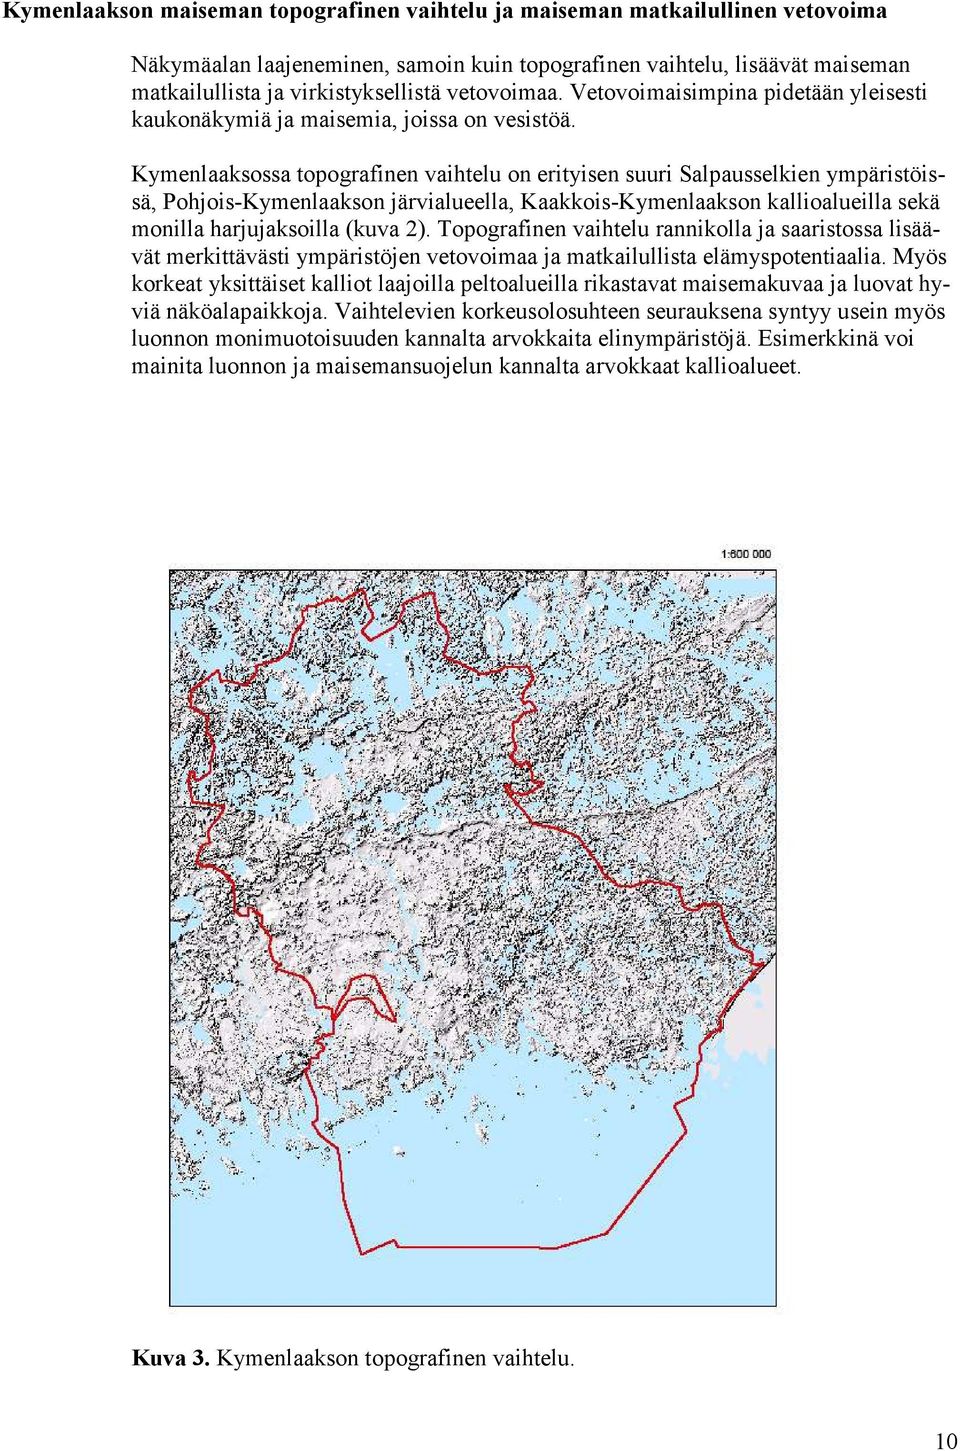 Kymenlaaksossa topografinen vaihtelu on erityisen suuri Salpausselkien ympäristöissä, Pohjois-Kymenlaakson järvialueella, Kaakkois-Kymenlaakson kallioalueilla sekä monilla harjujaksoilla (kuva 2).